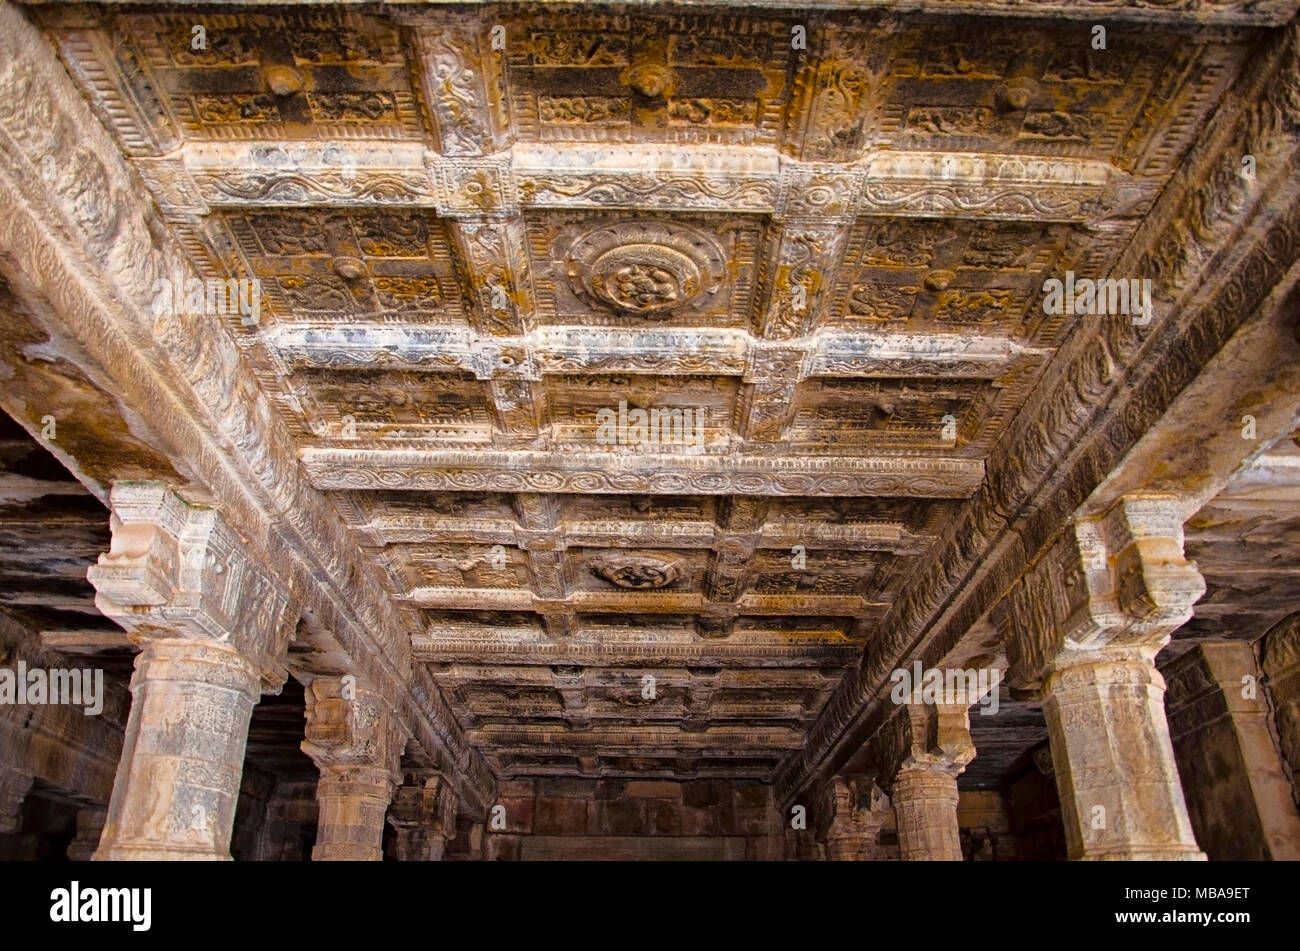 Il carving dettagli sul soffitto del tempio Airavatesvara, Darasuram, nei pressi di Kumbakonam, Tamil Nadu, India. Hindu Shiva tempio del Tamil architettura, costruito Foto Stock